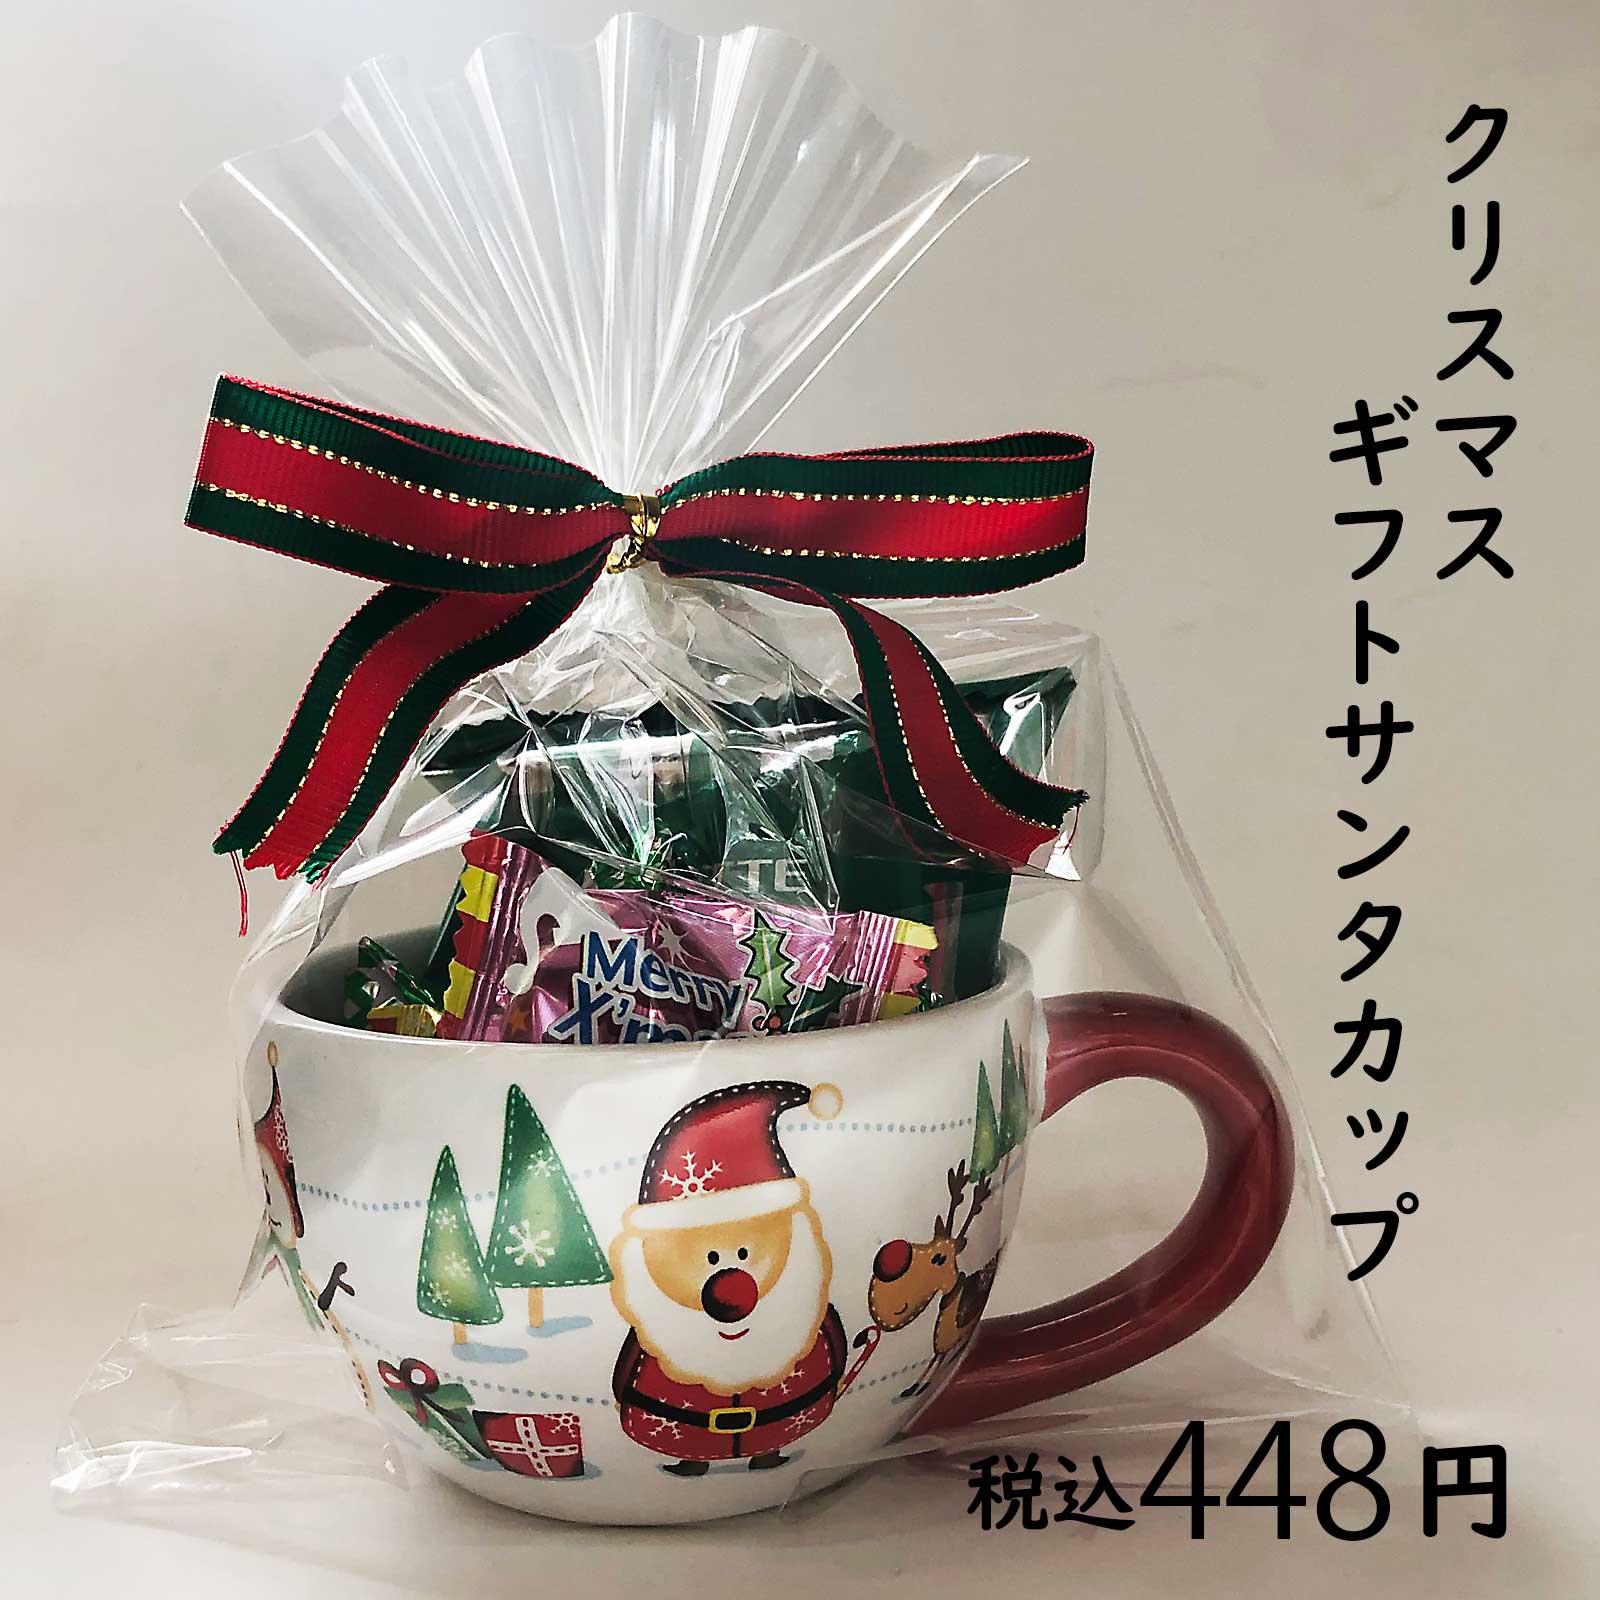 クリスマスプレゼントマグカップ クリスマス商品 お菓子の詰め合わせの通販ならセラーズのオンラインショップ